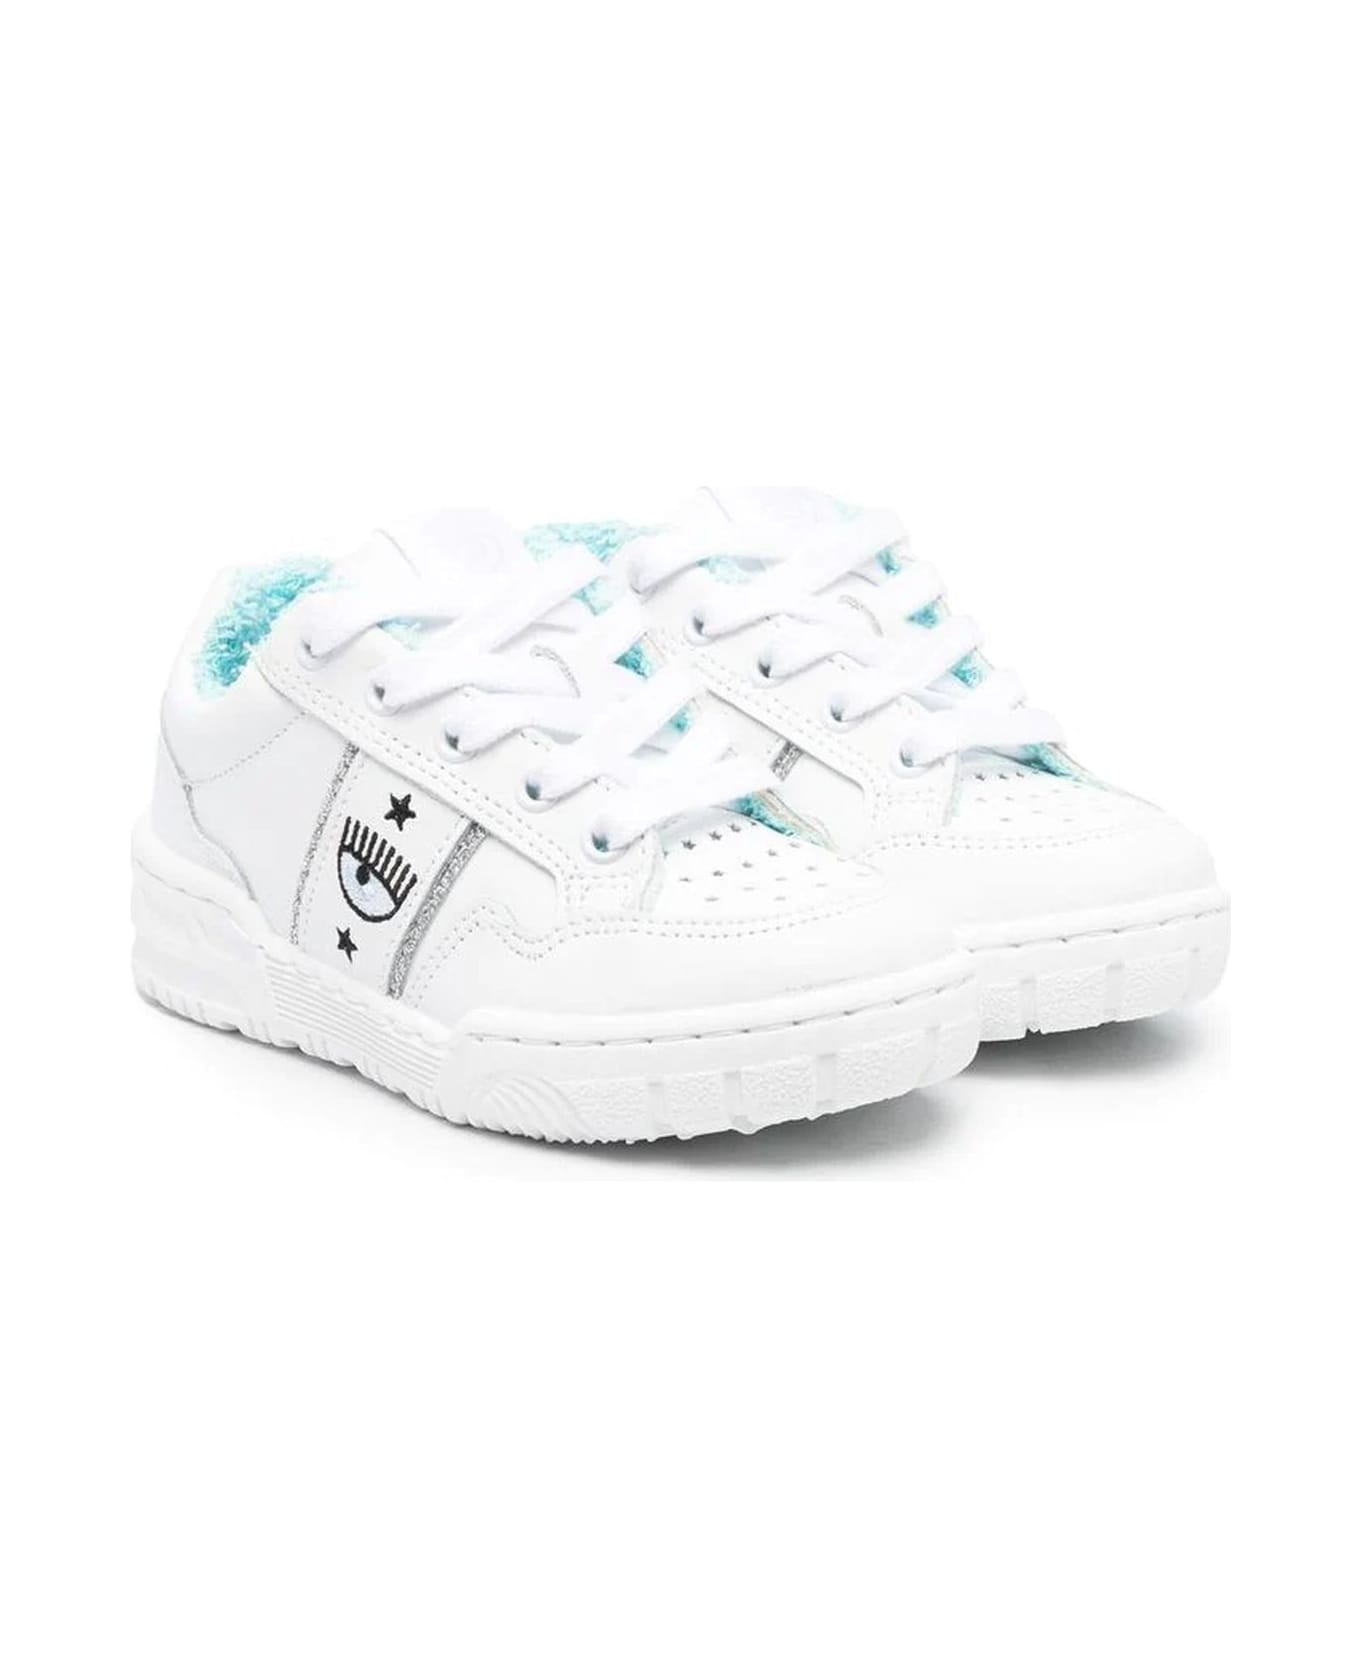 Chiara Ferragni White Leather Sneakers - Bianco